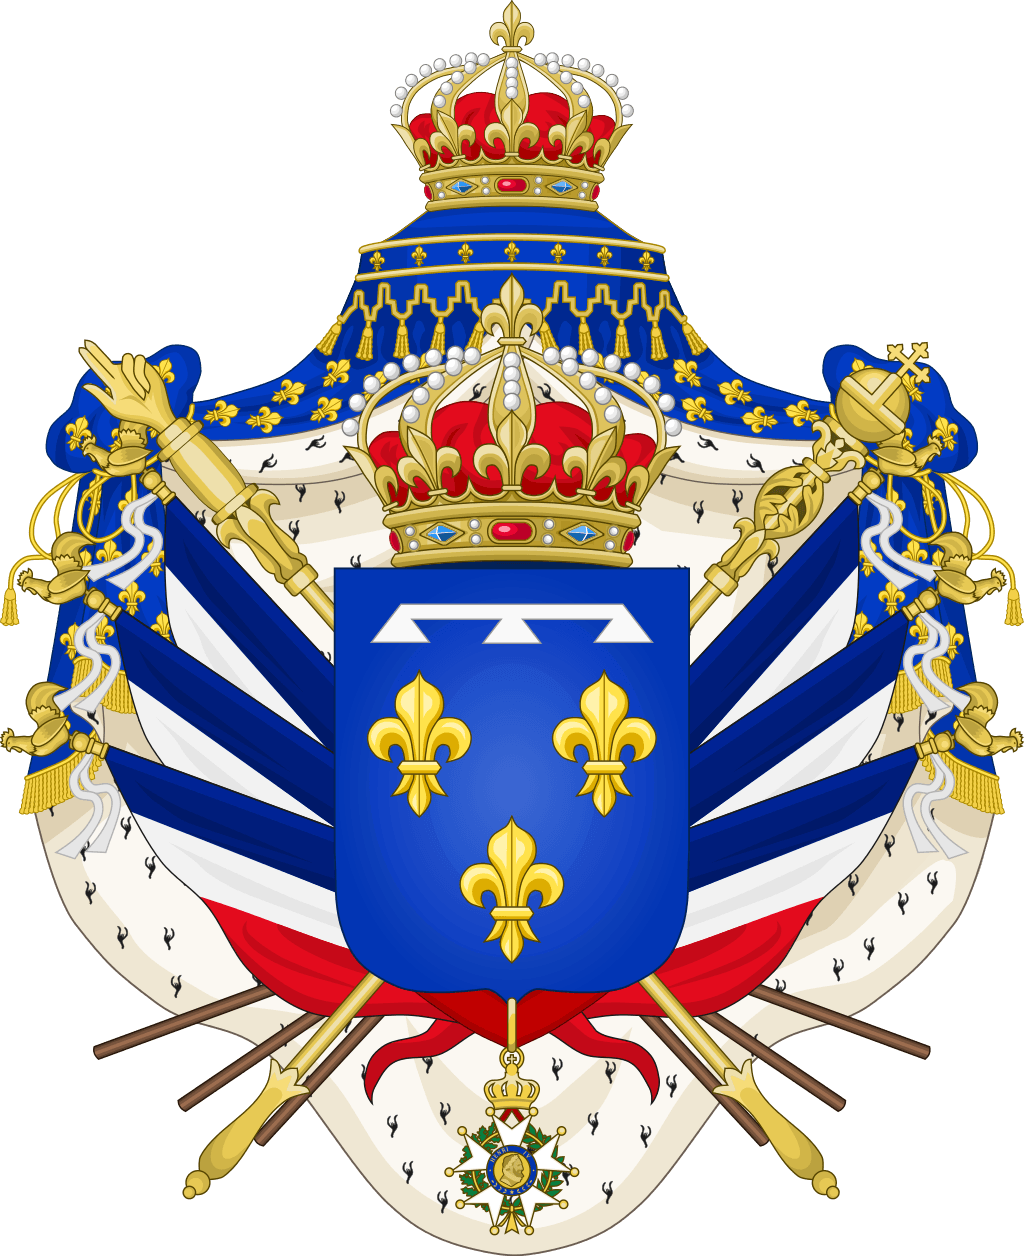 Stemma dei Re di Francia Orléans